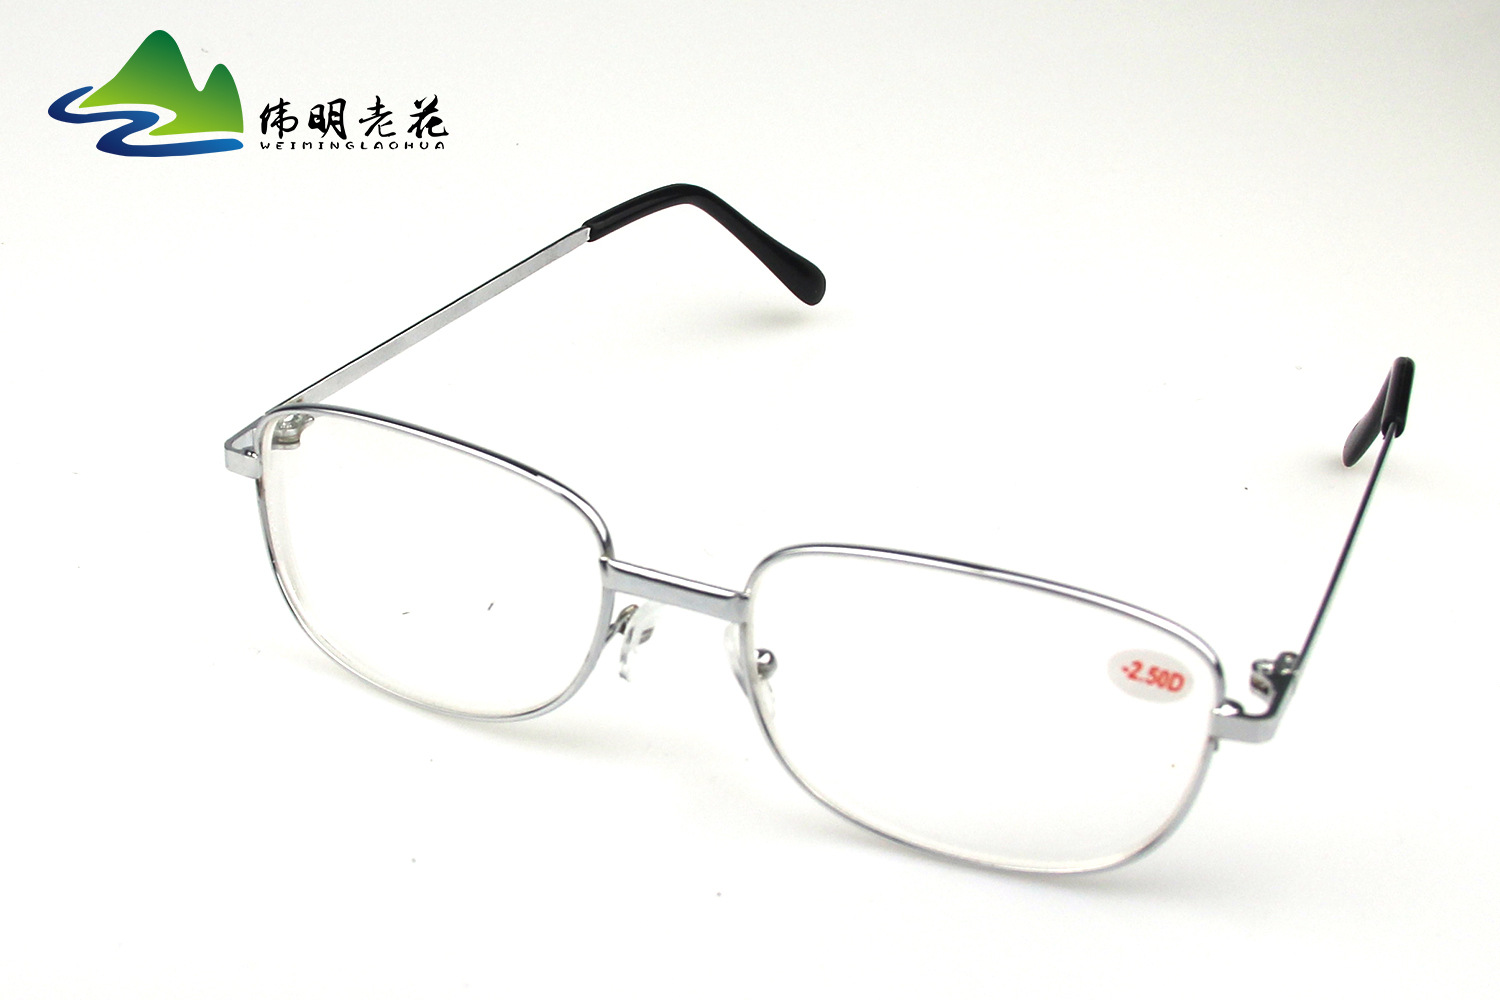 Montures de lunettes WEIMING VIEILLE FLEUR en Alliage cuivre-nickel - Ref 3139339 Image 7